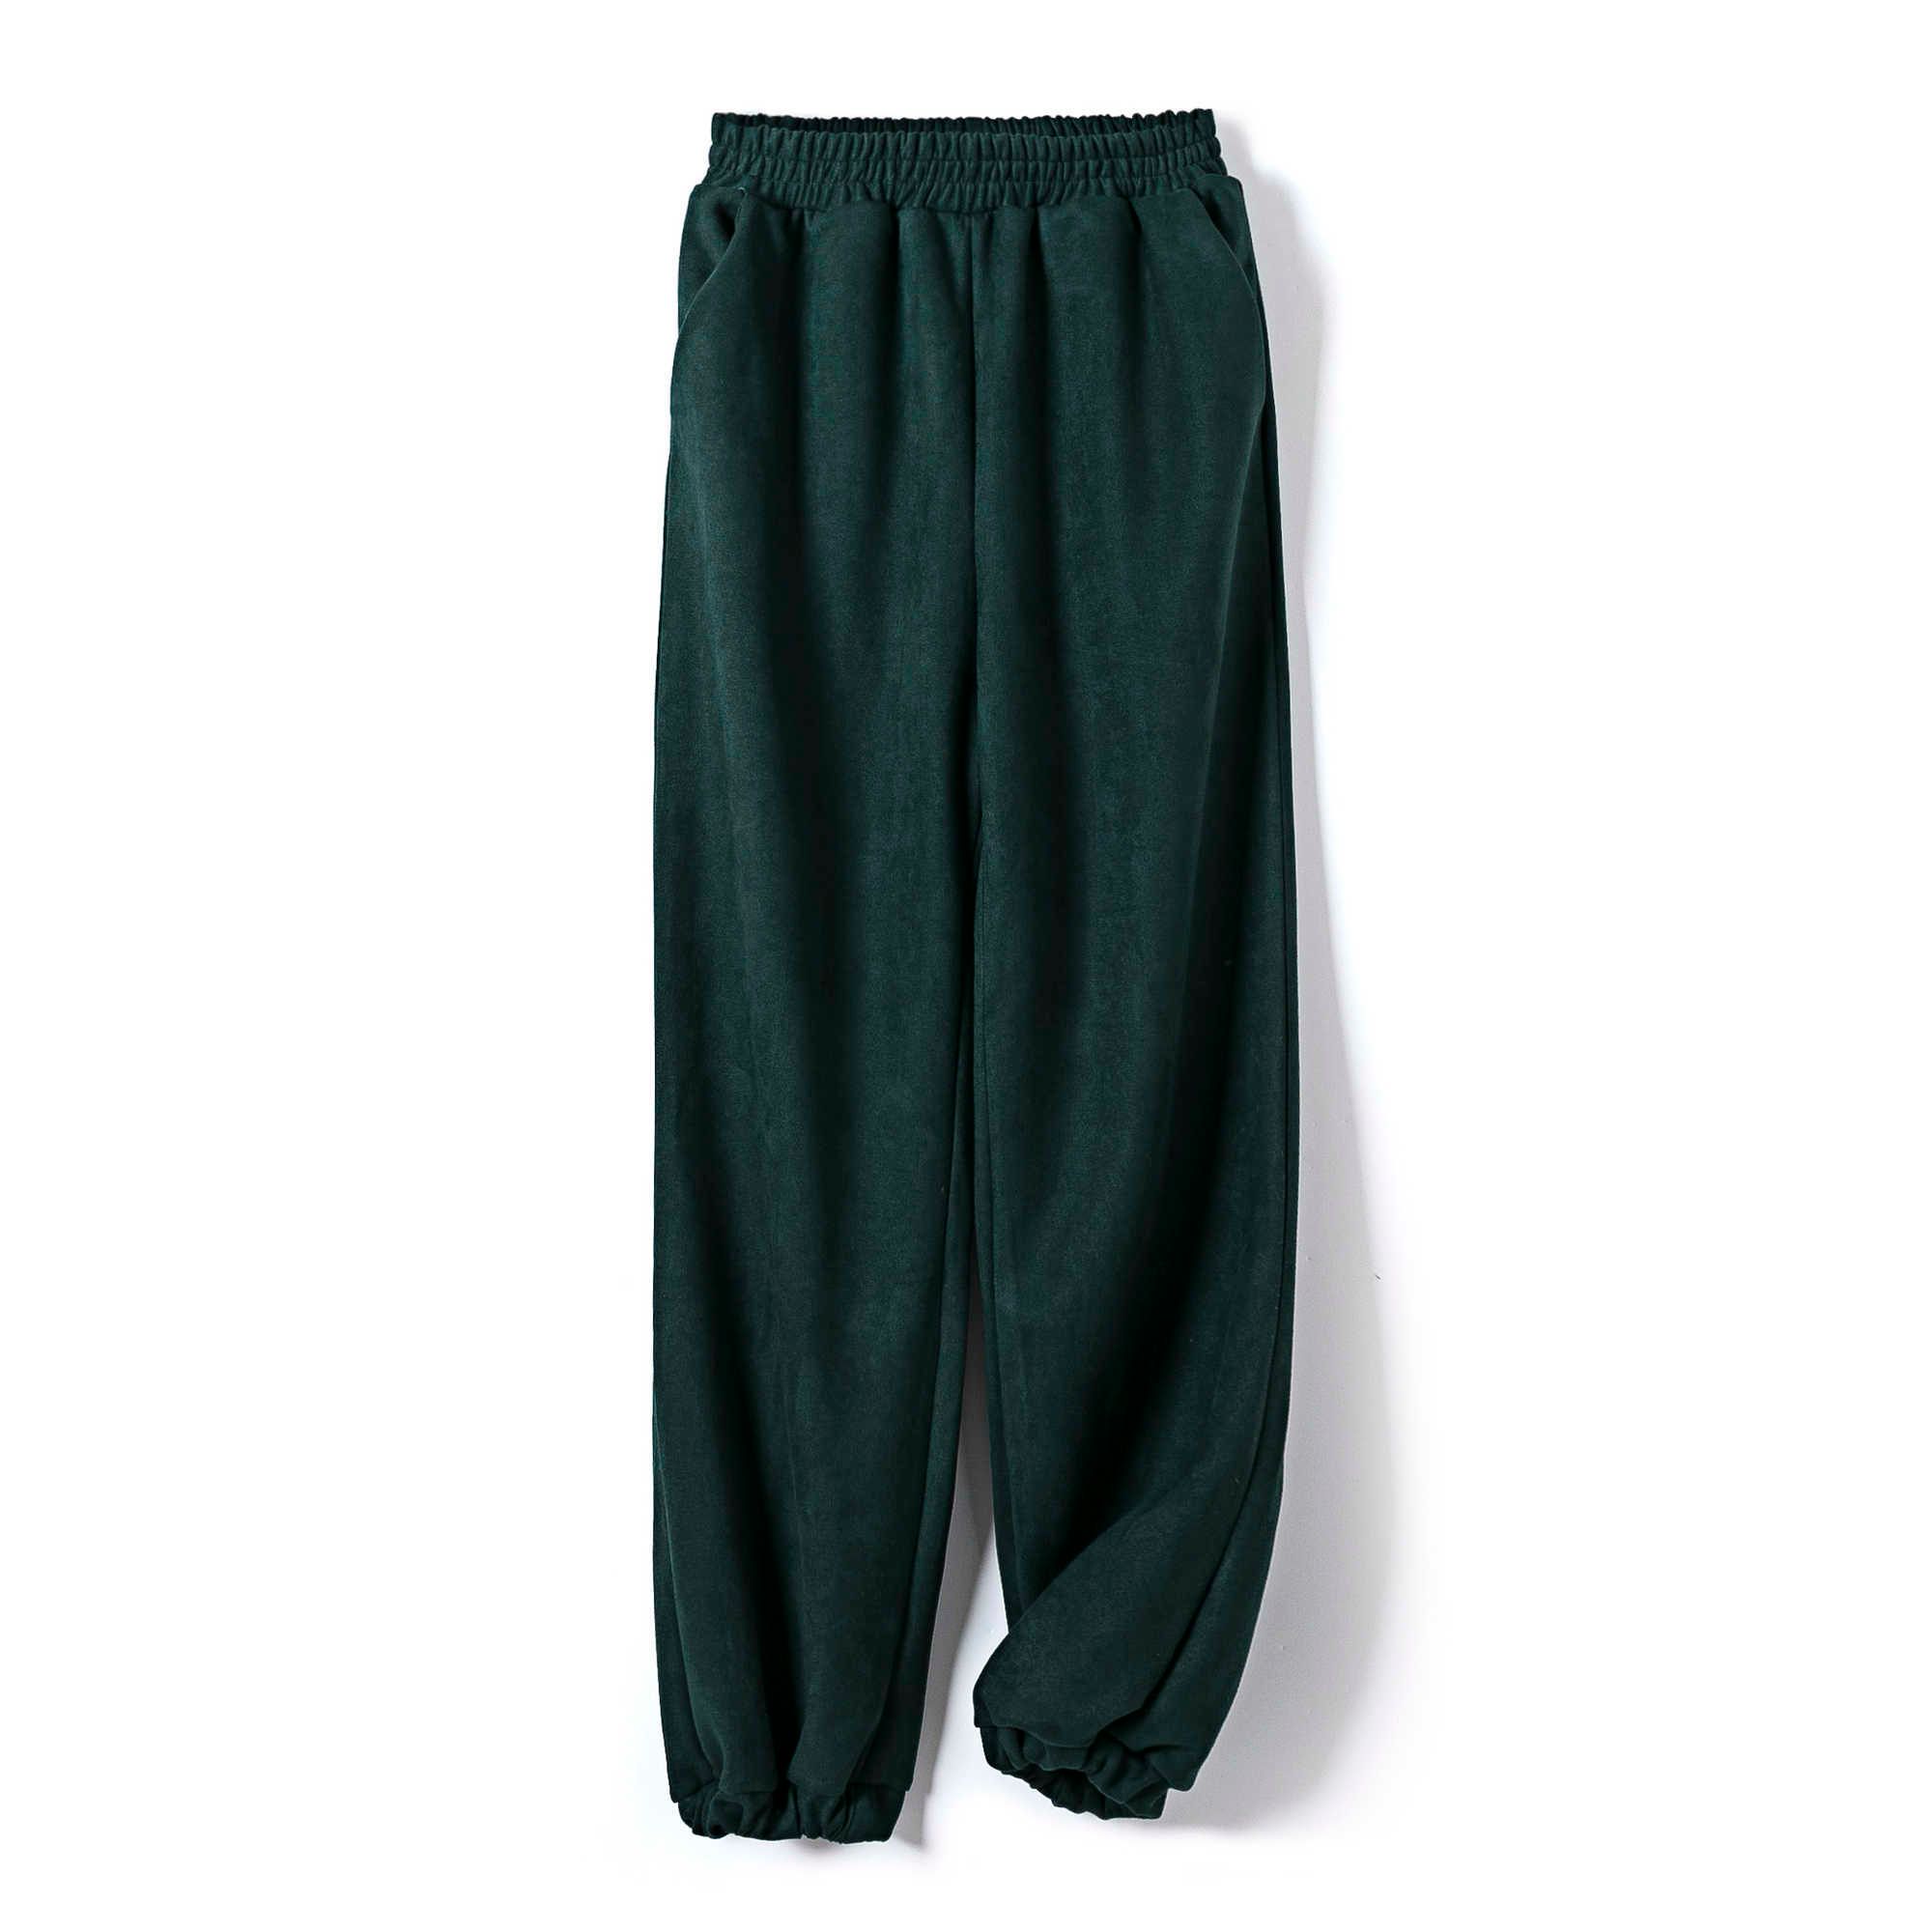 Czarniaki zielone spodnie